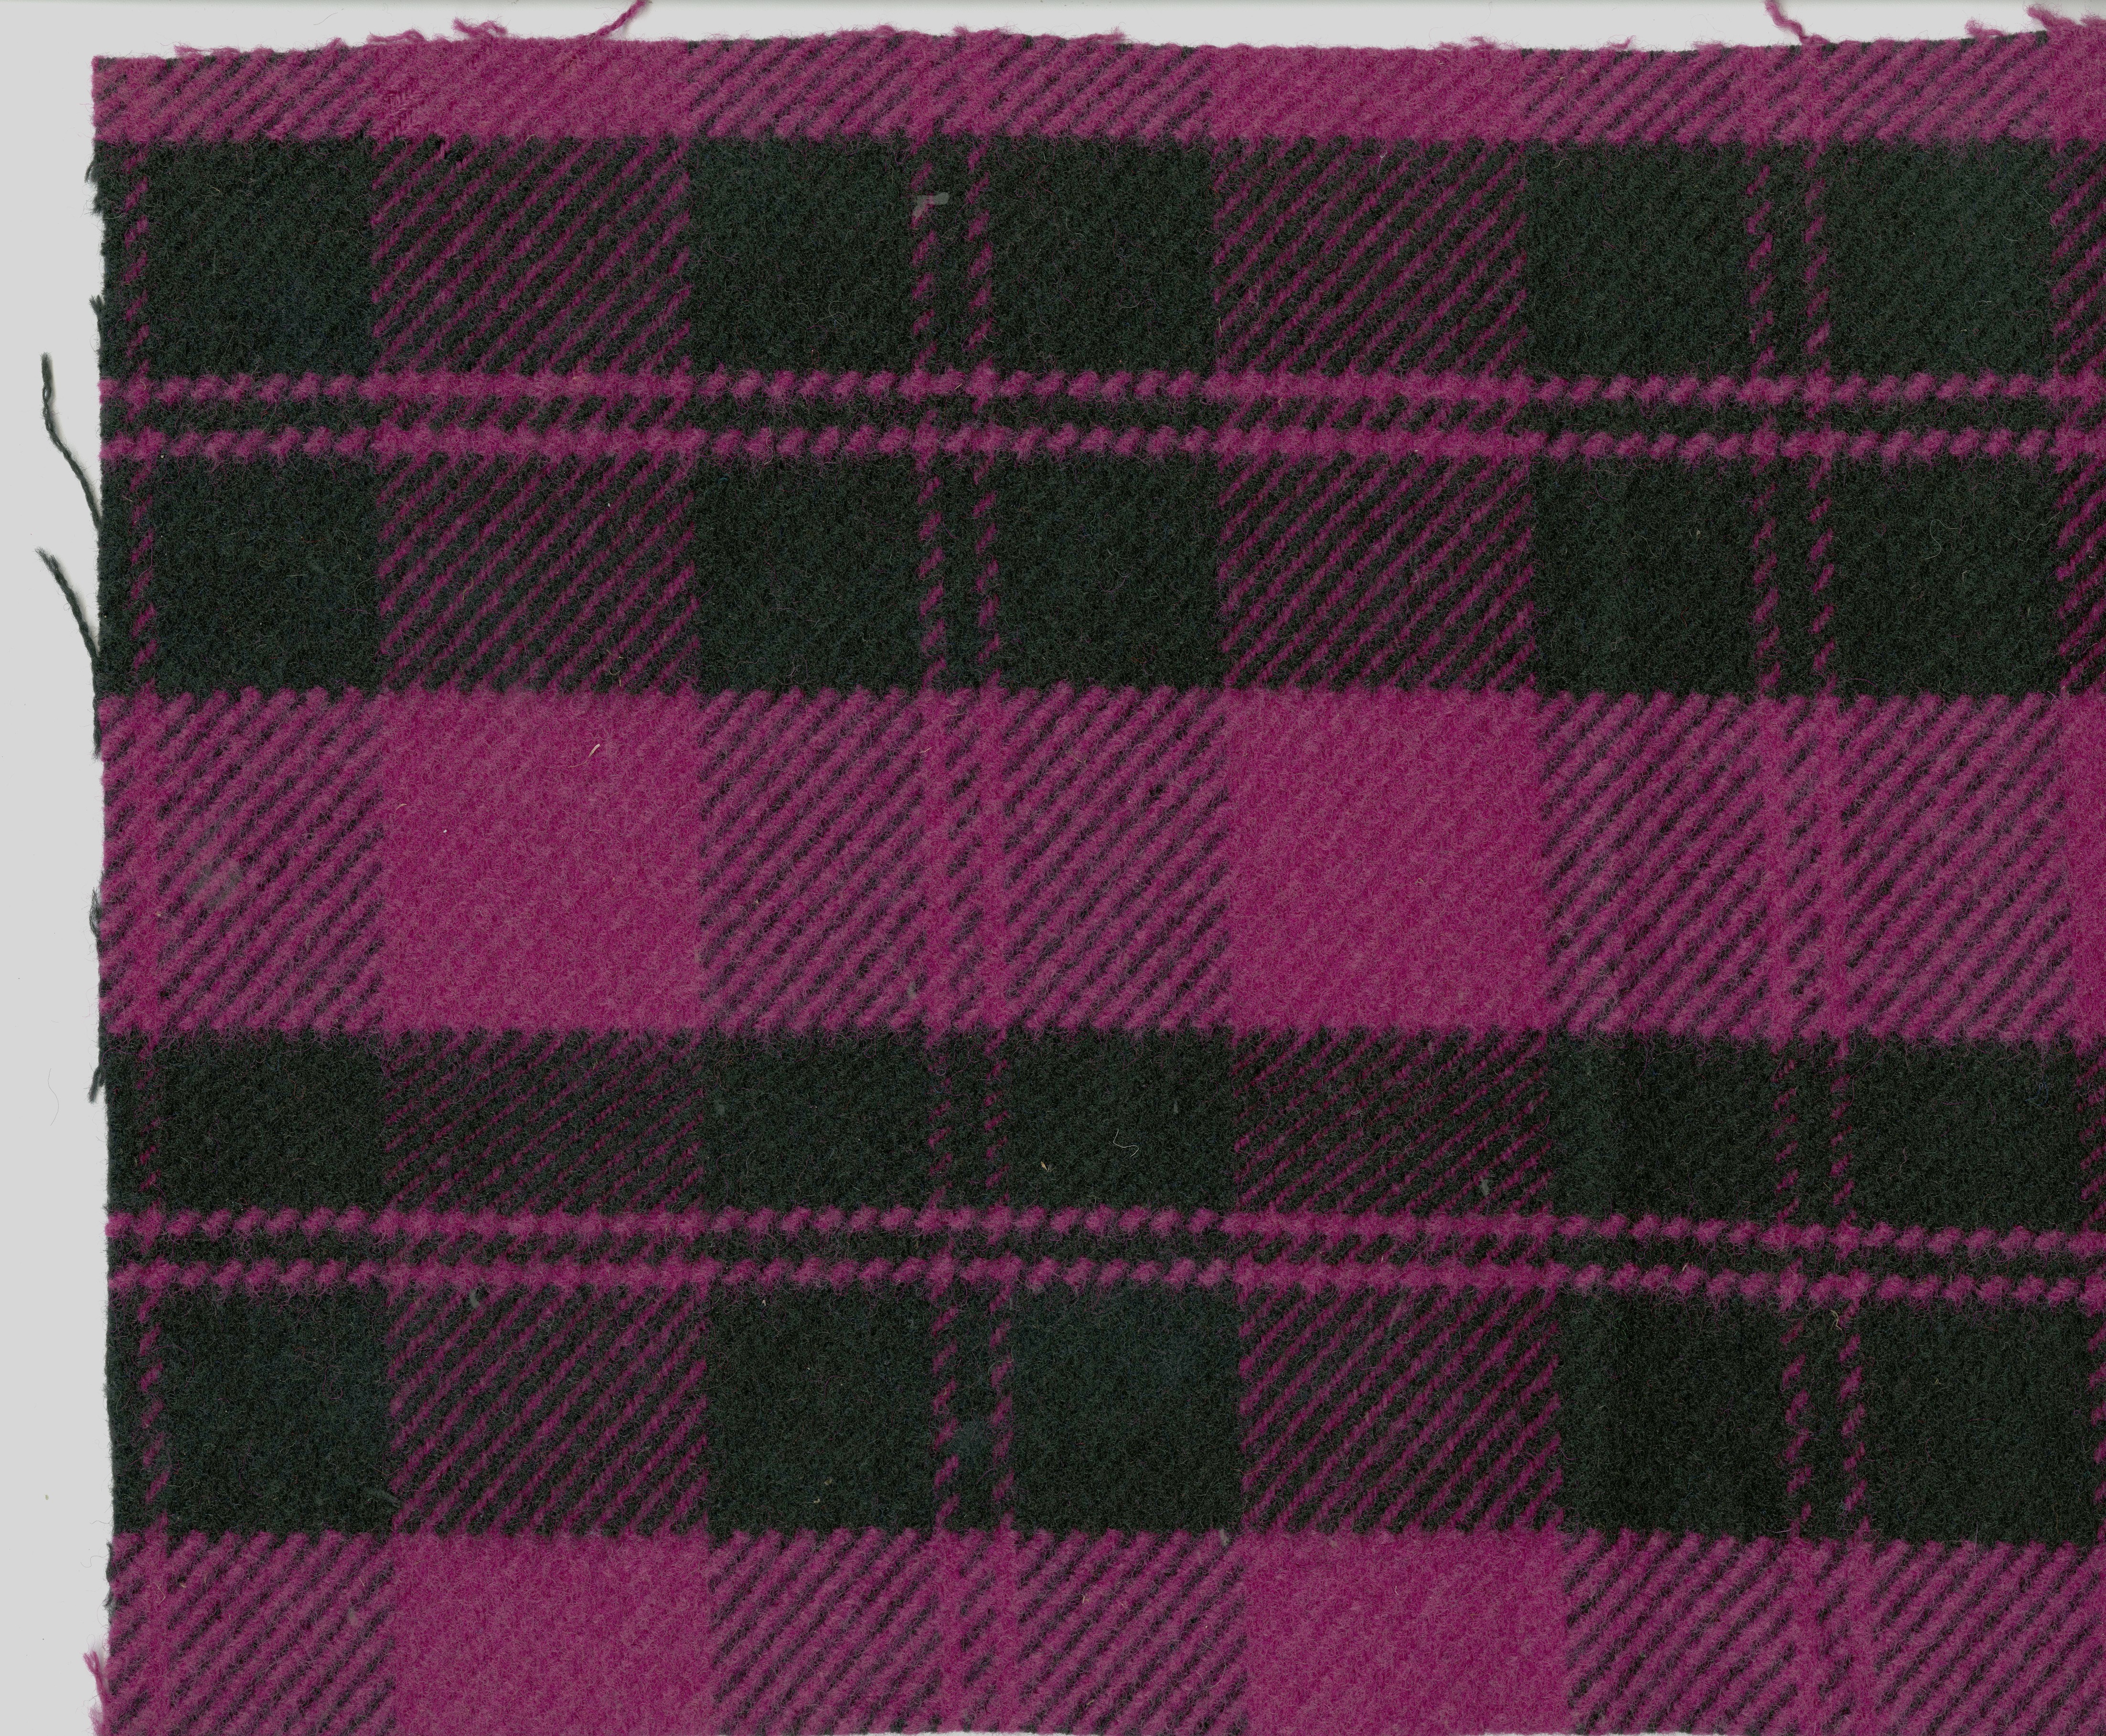 Stoffprobe, pink, schwarz kariert (Tuchfabrik Gebr. Pfau CC BY-NC-SA)